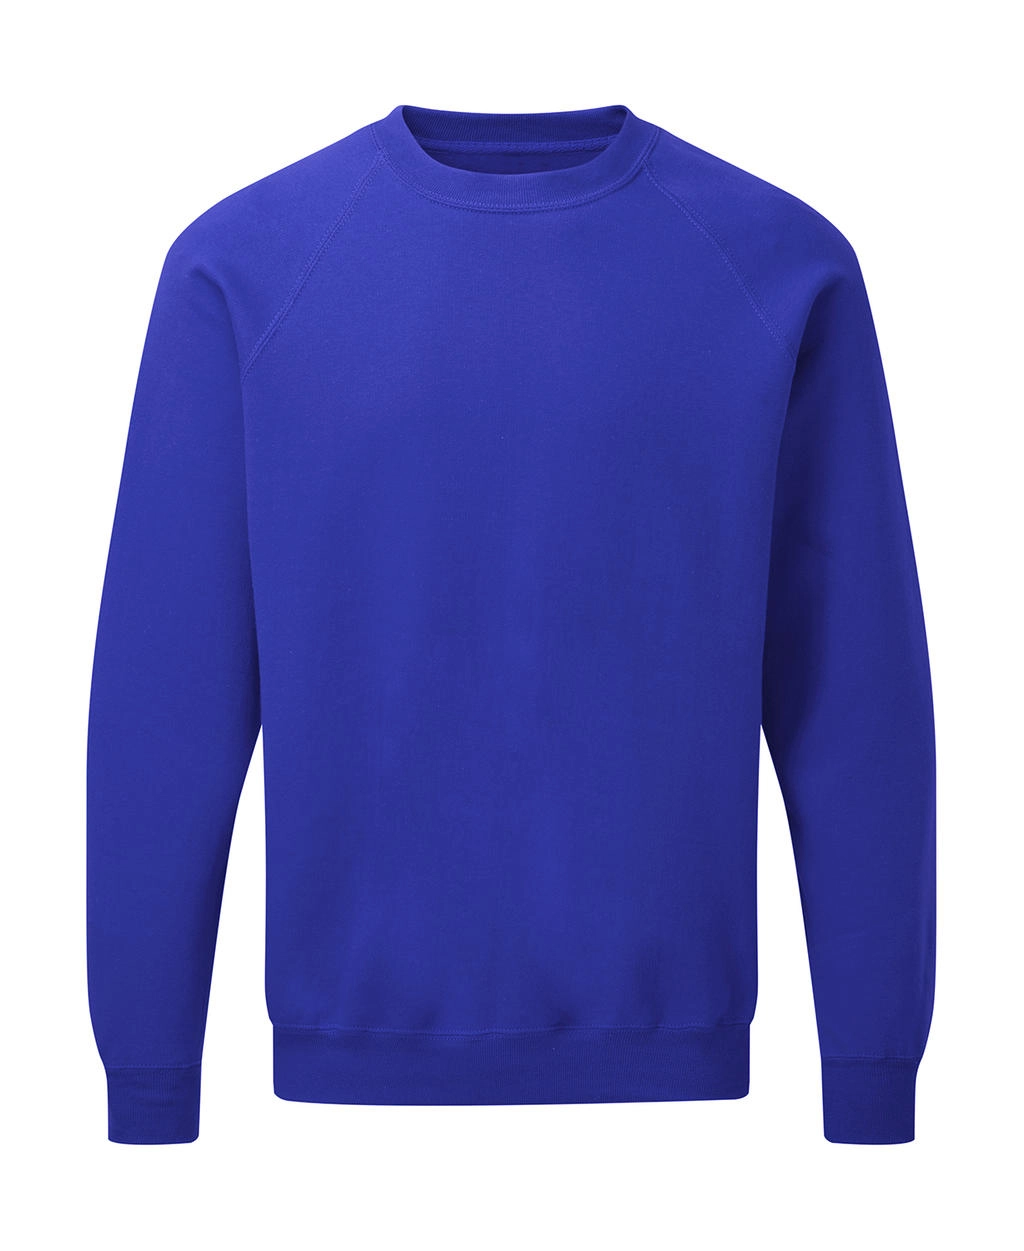 Raglan Sweatshirt Men zum Besticken und Bedrucken in der Farbe Royal Blue mit Ihren Logo, Schriftzug oder Motiv.